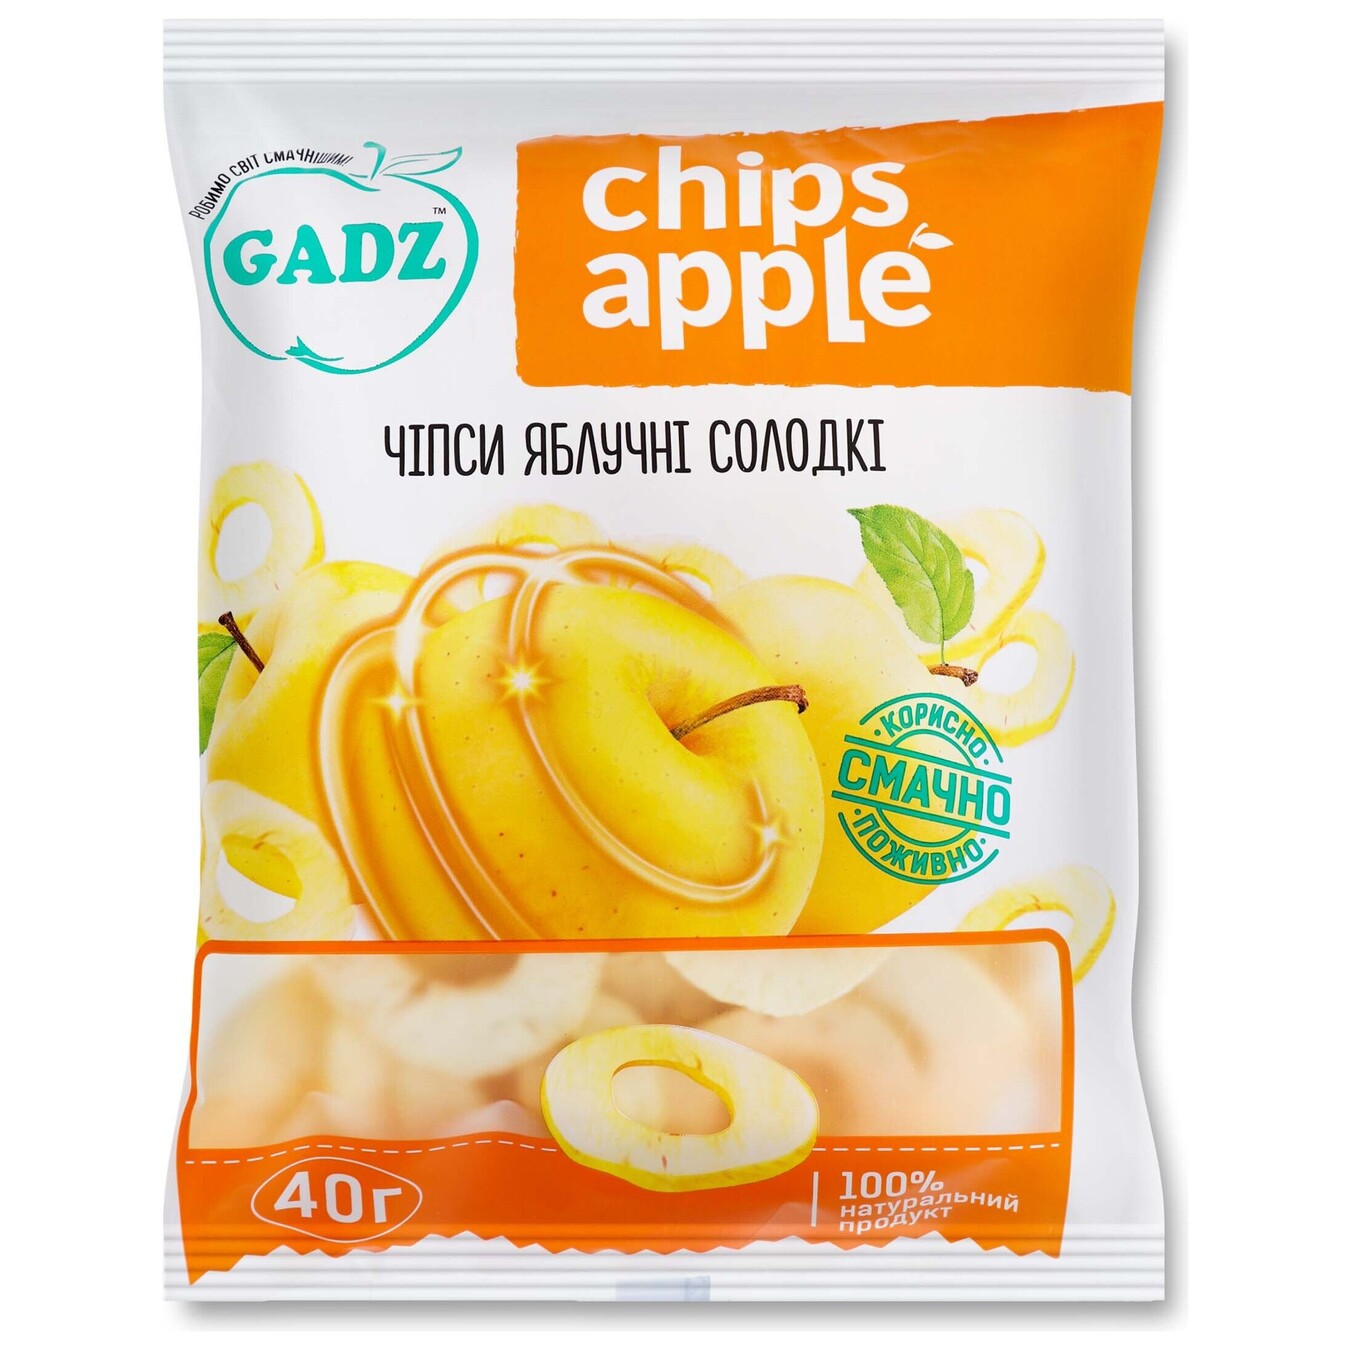 Чипсы GADZ яблочные сладкие 40г